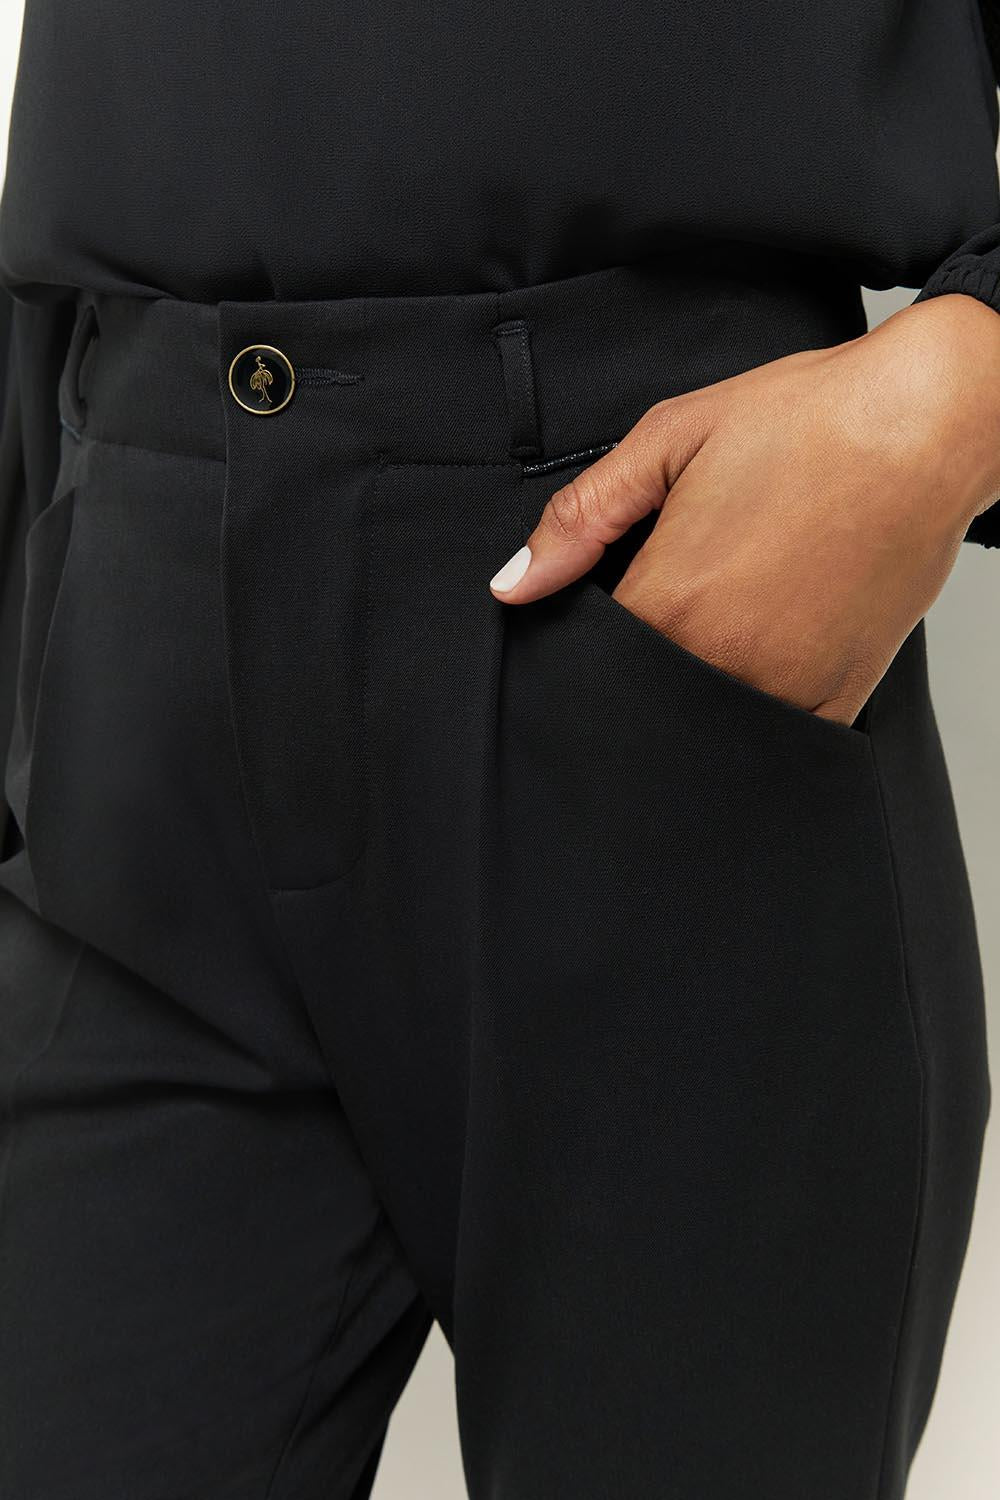 POPPY - Pantalon droit noir façon laine froide